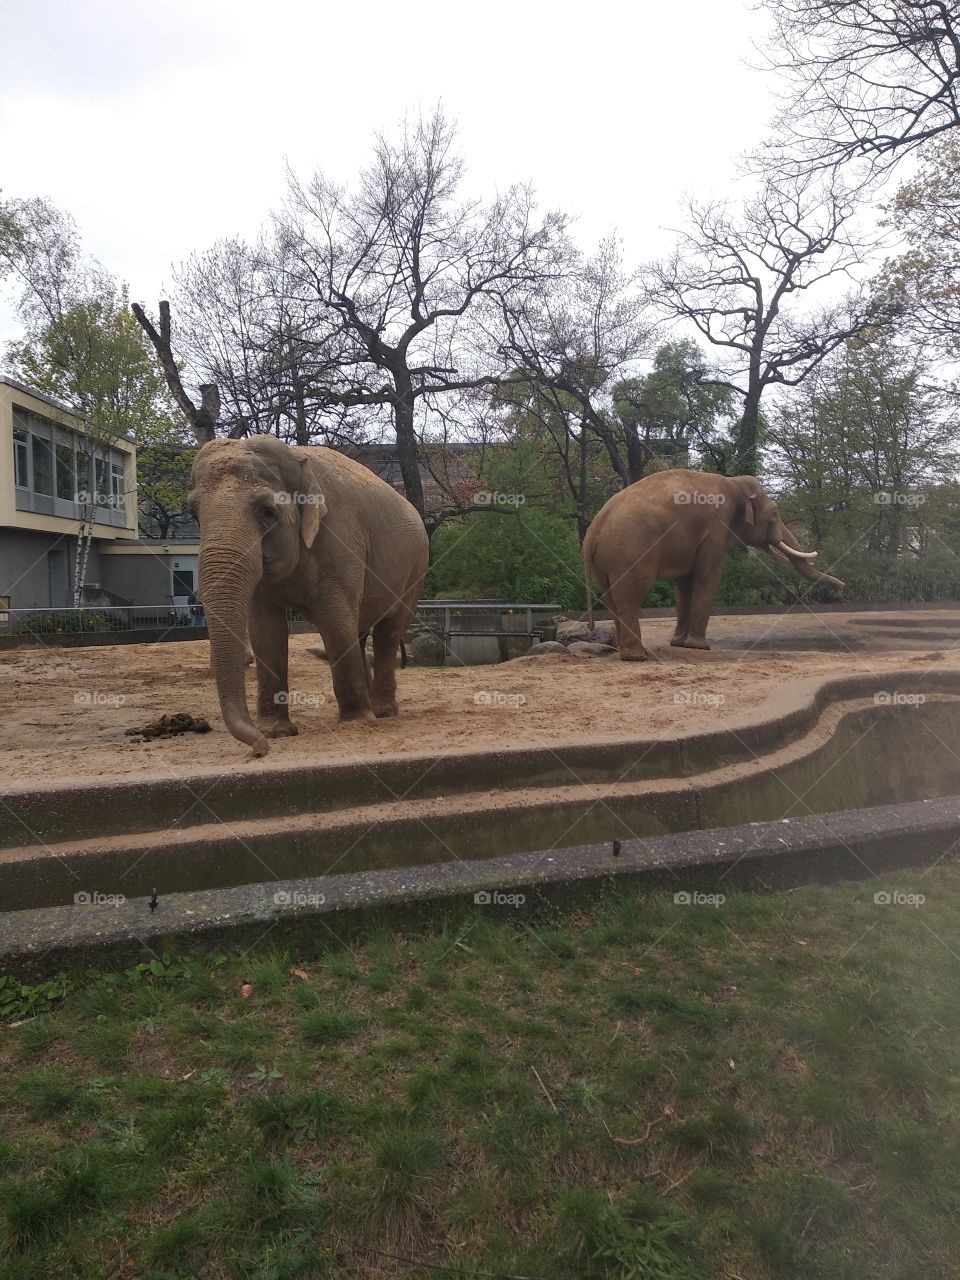 Elephants in Berlin Zoo